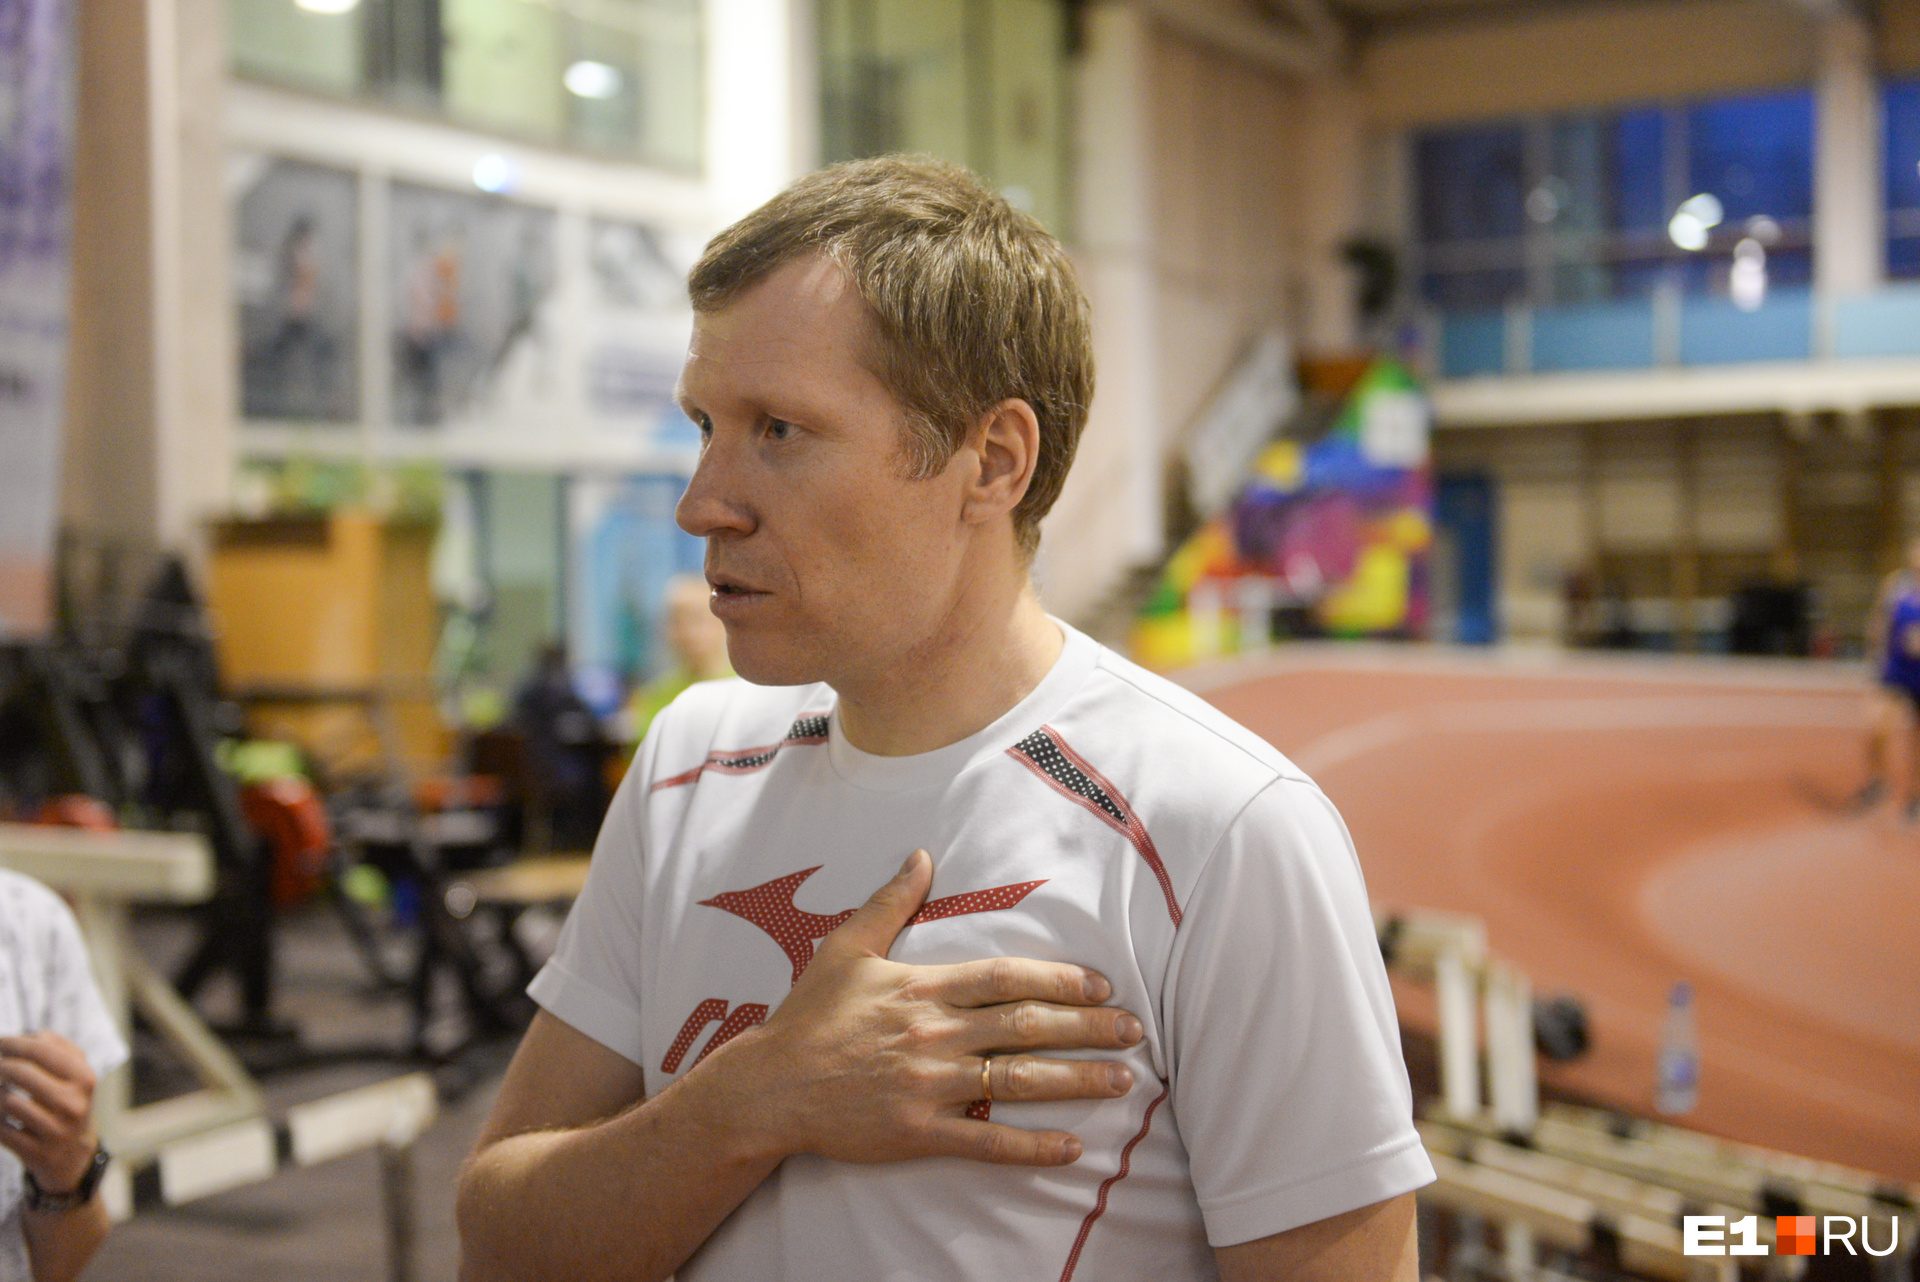 Олег Кульков профессионально занимался бегом 18 лет, а теперь он спортсмен-любитель и тренирует других